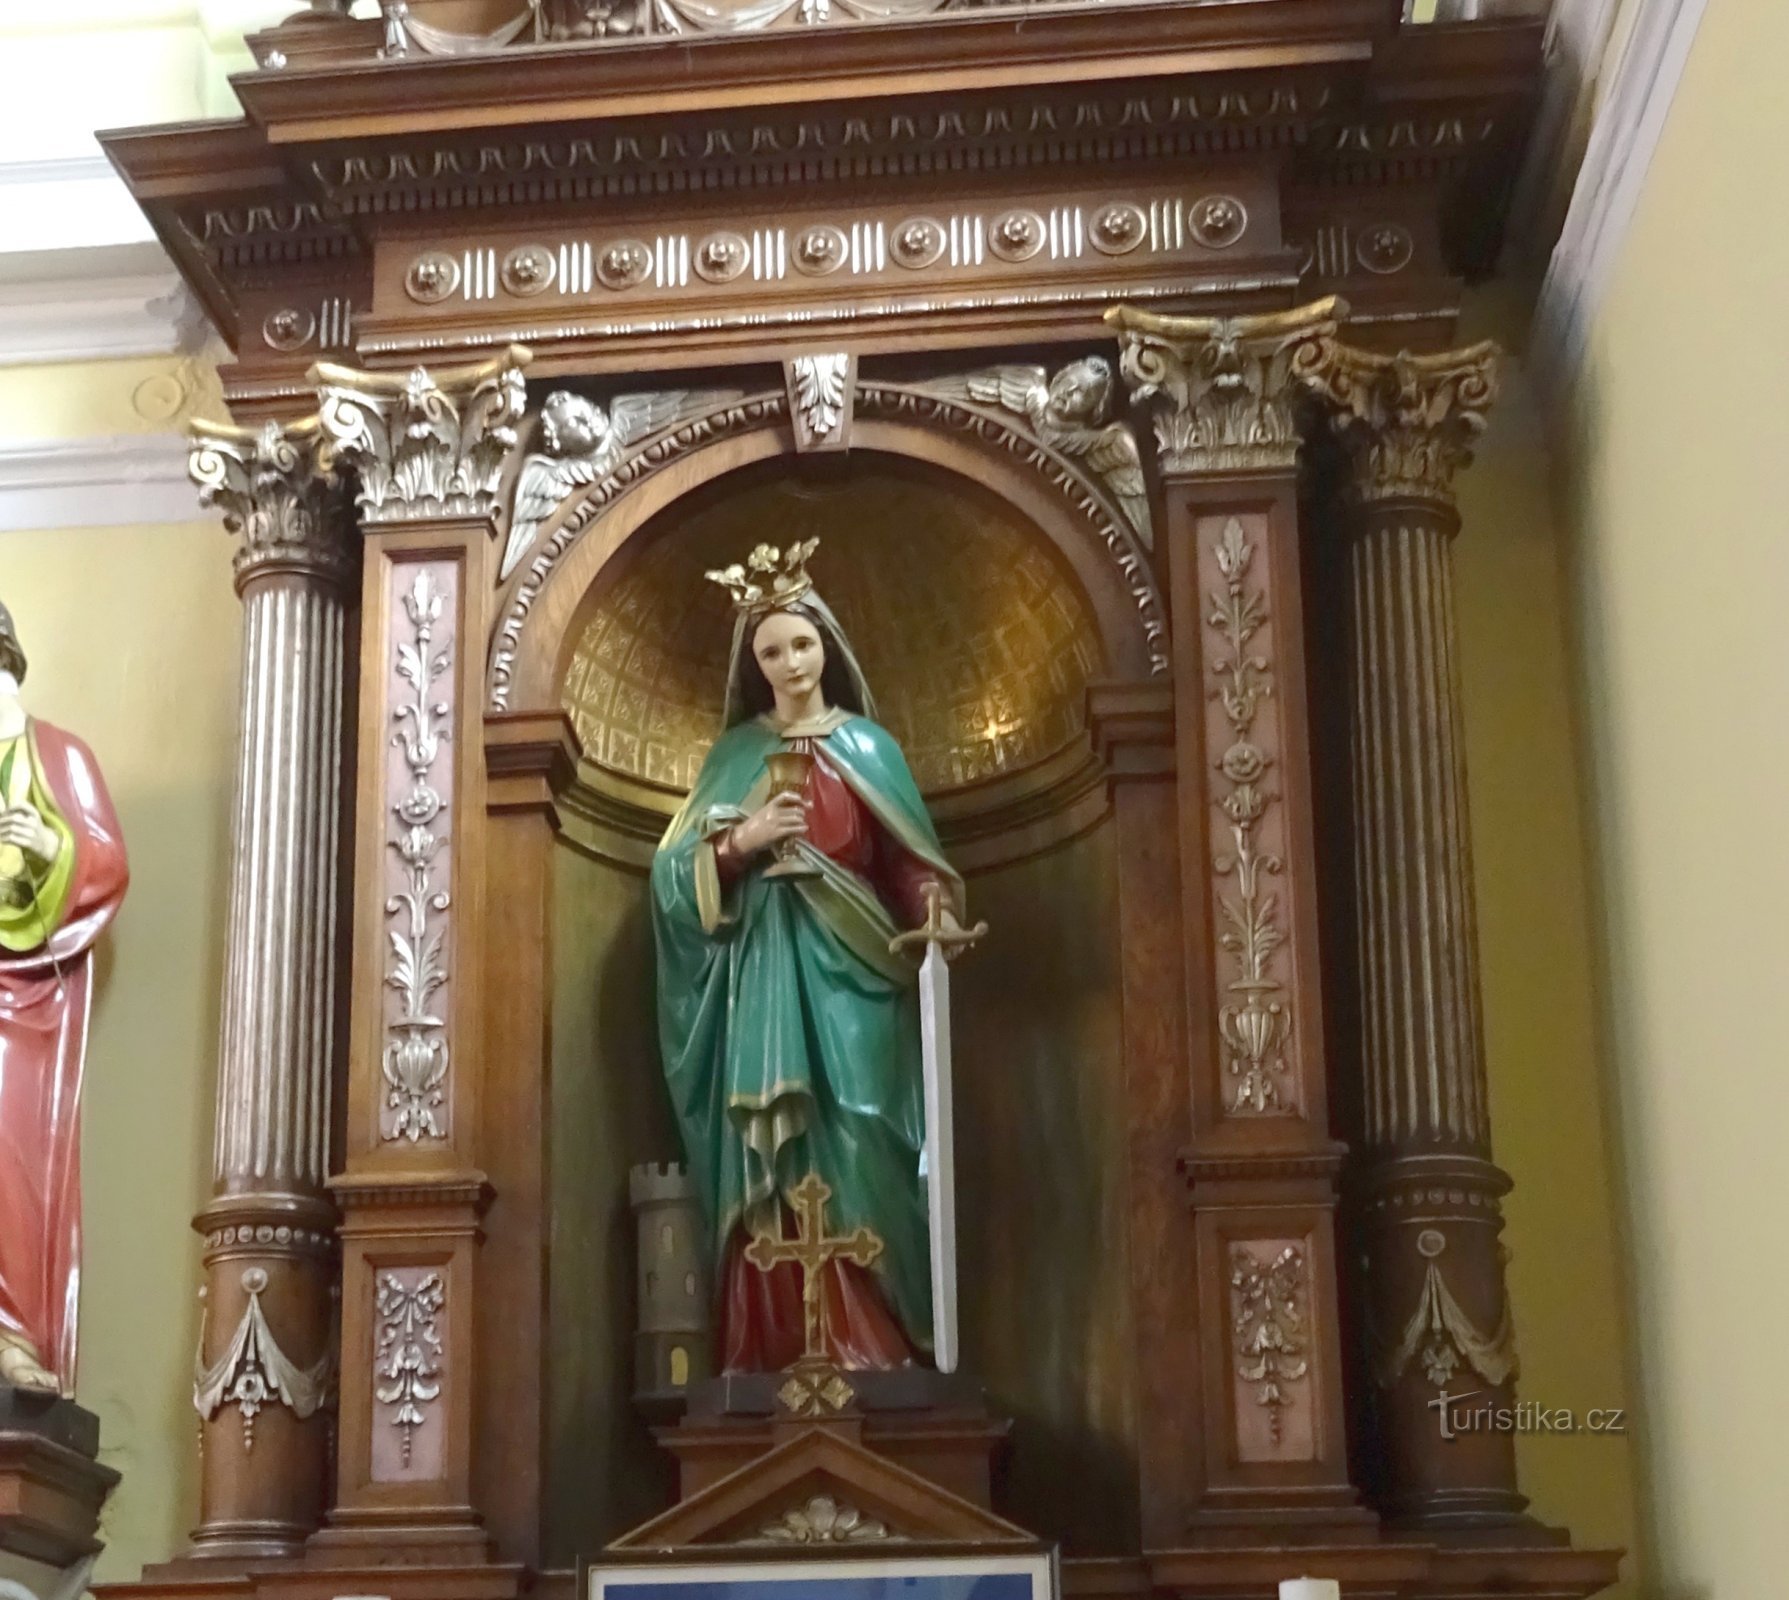 St. Bárbara no altar de derivação